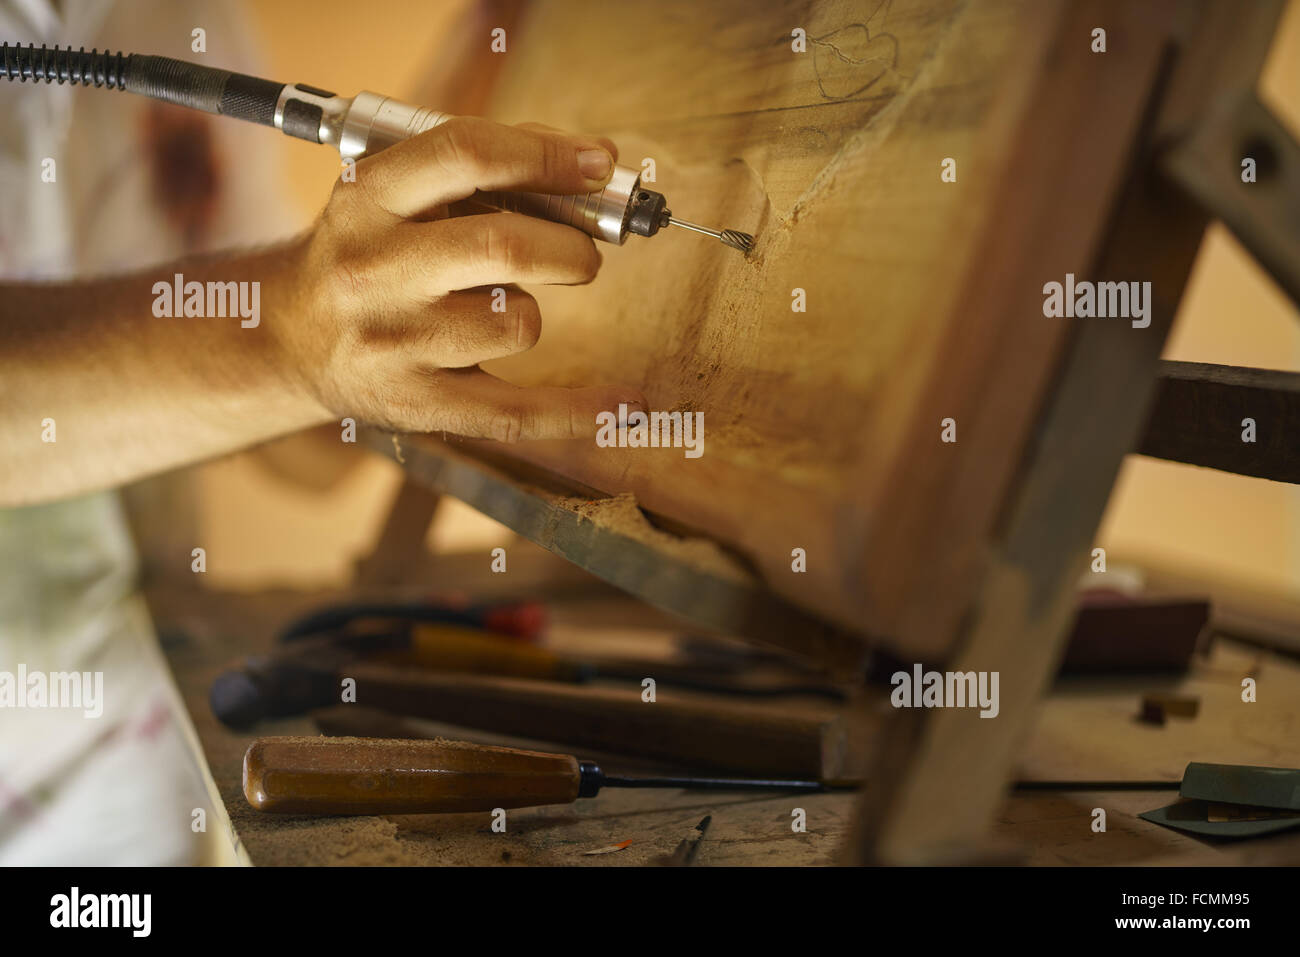 Homme adulte au travail que l'artiste, la ciselure un bas-relief dans son atelier. Il travaille avec un foret à bois Ciseau une peinture. Banque D'Images